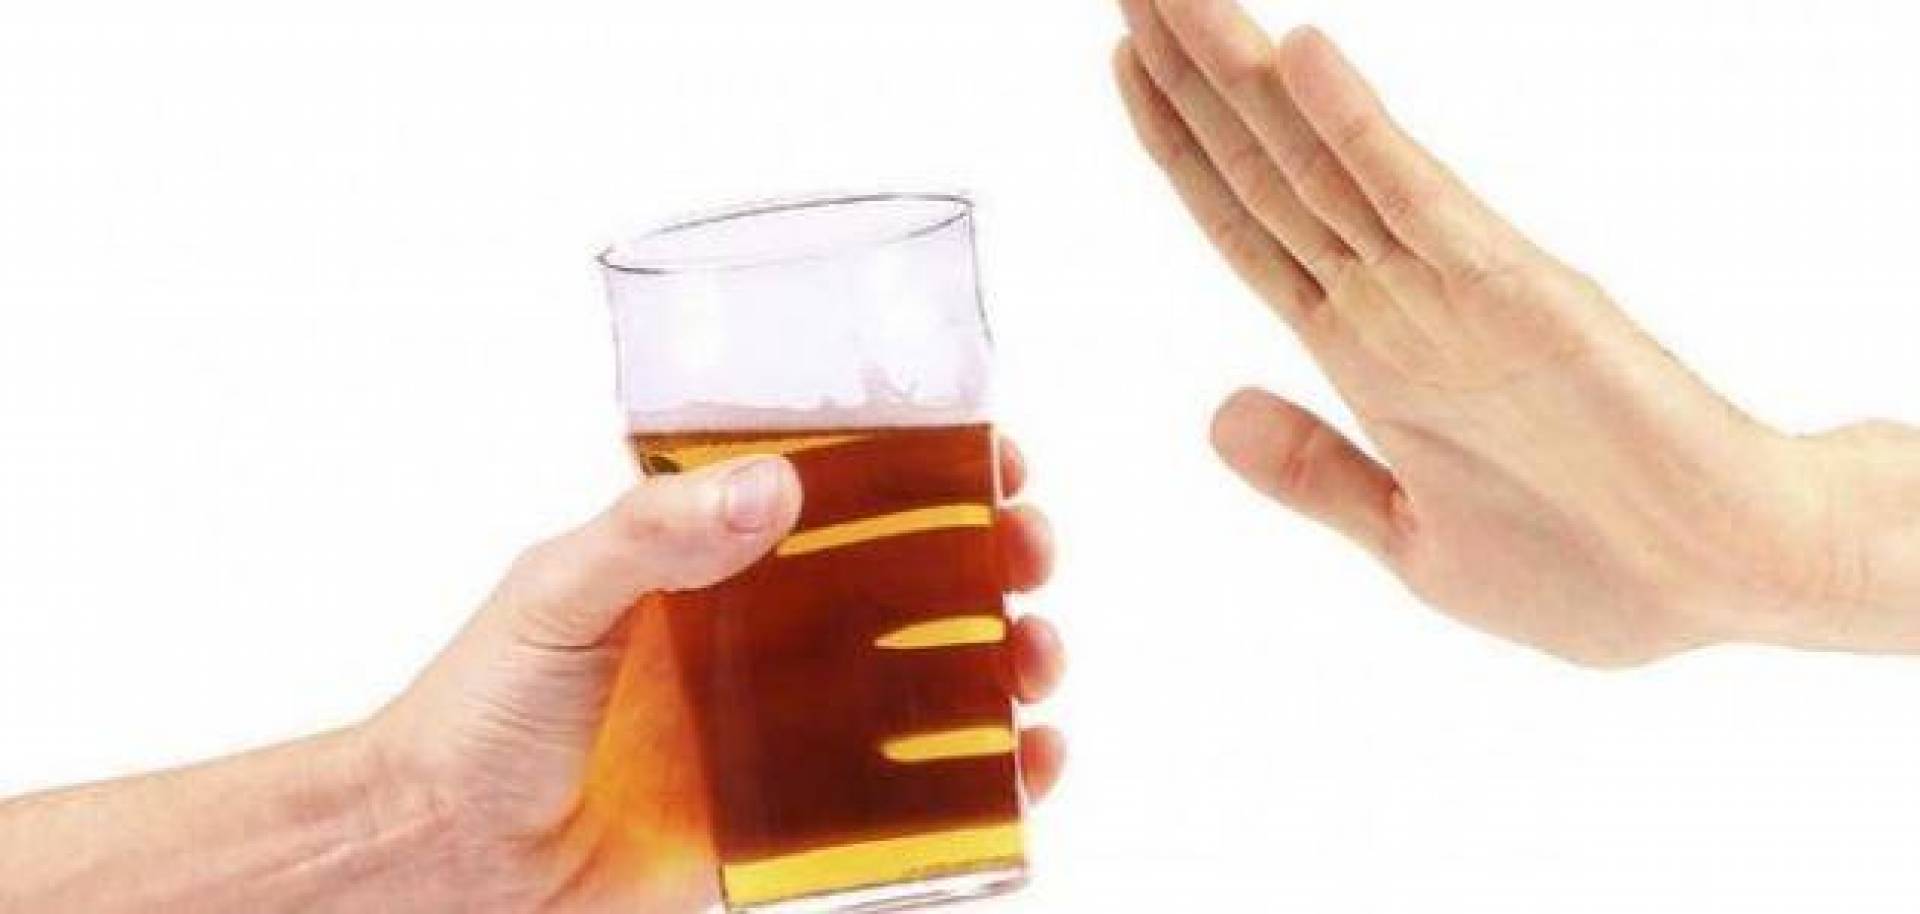 قائمة الأمراض المرتبطة بشرب الكحول